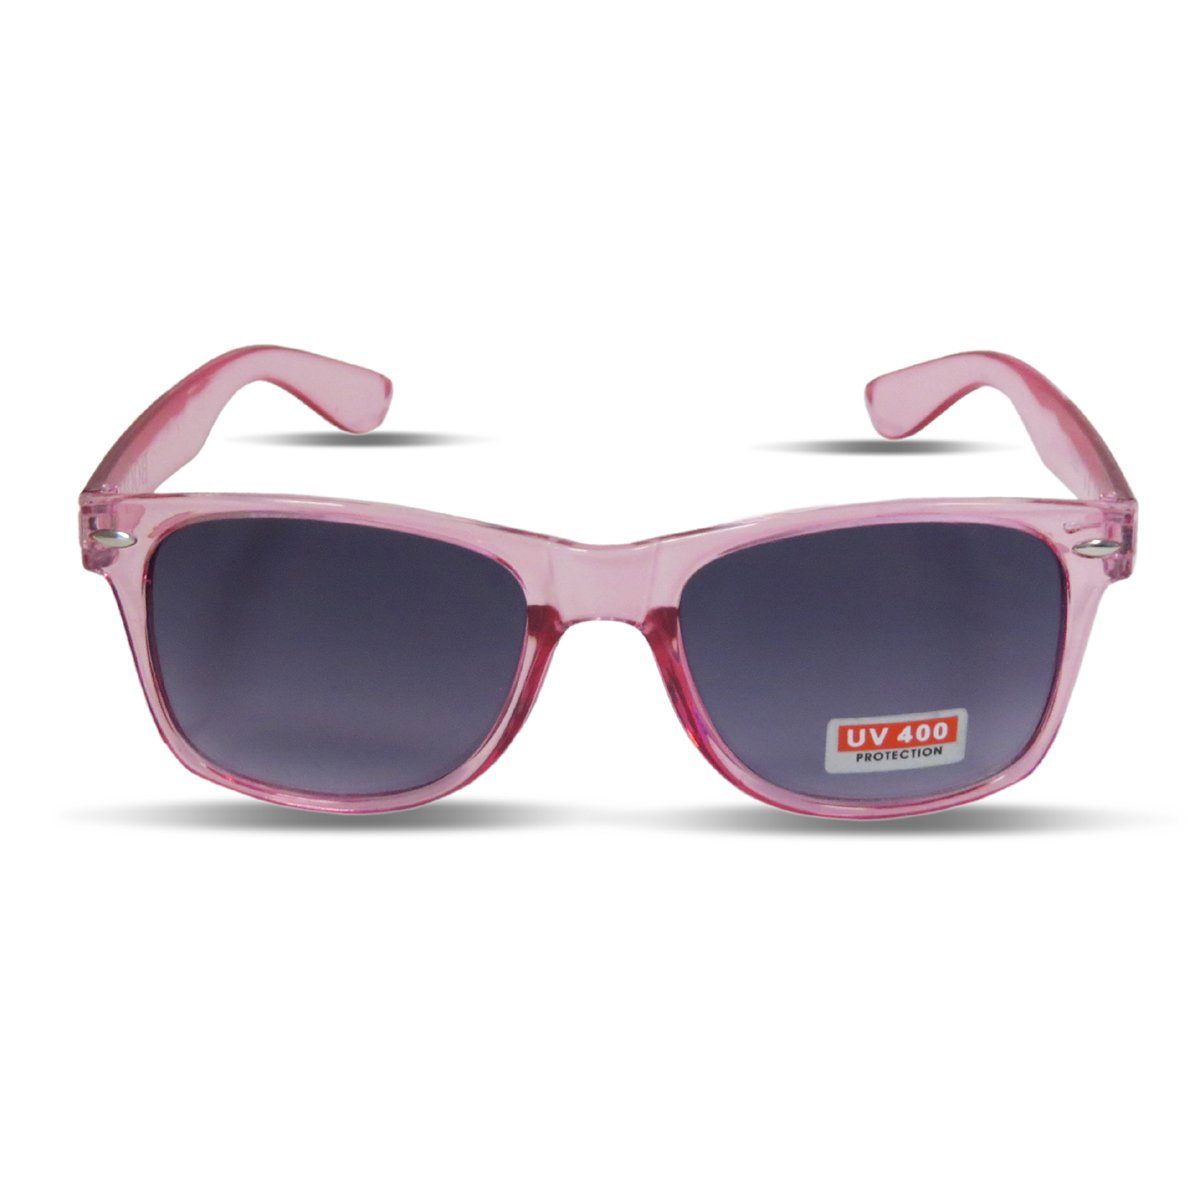 Sonia Originelli Sonnenbrille Sonnenbrille Einfarbig Transparent Partybrille Spaß Fasching Onesize pink